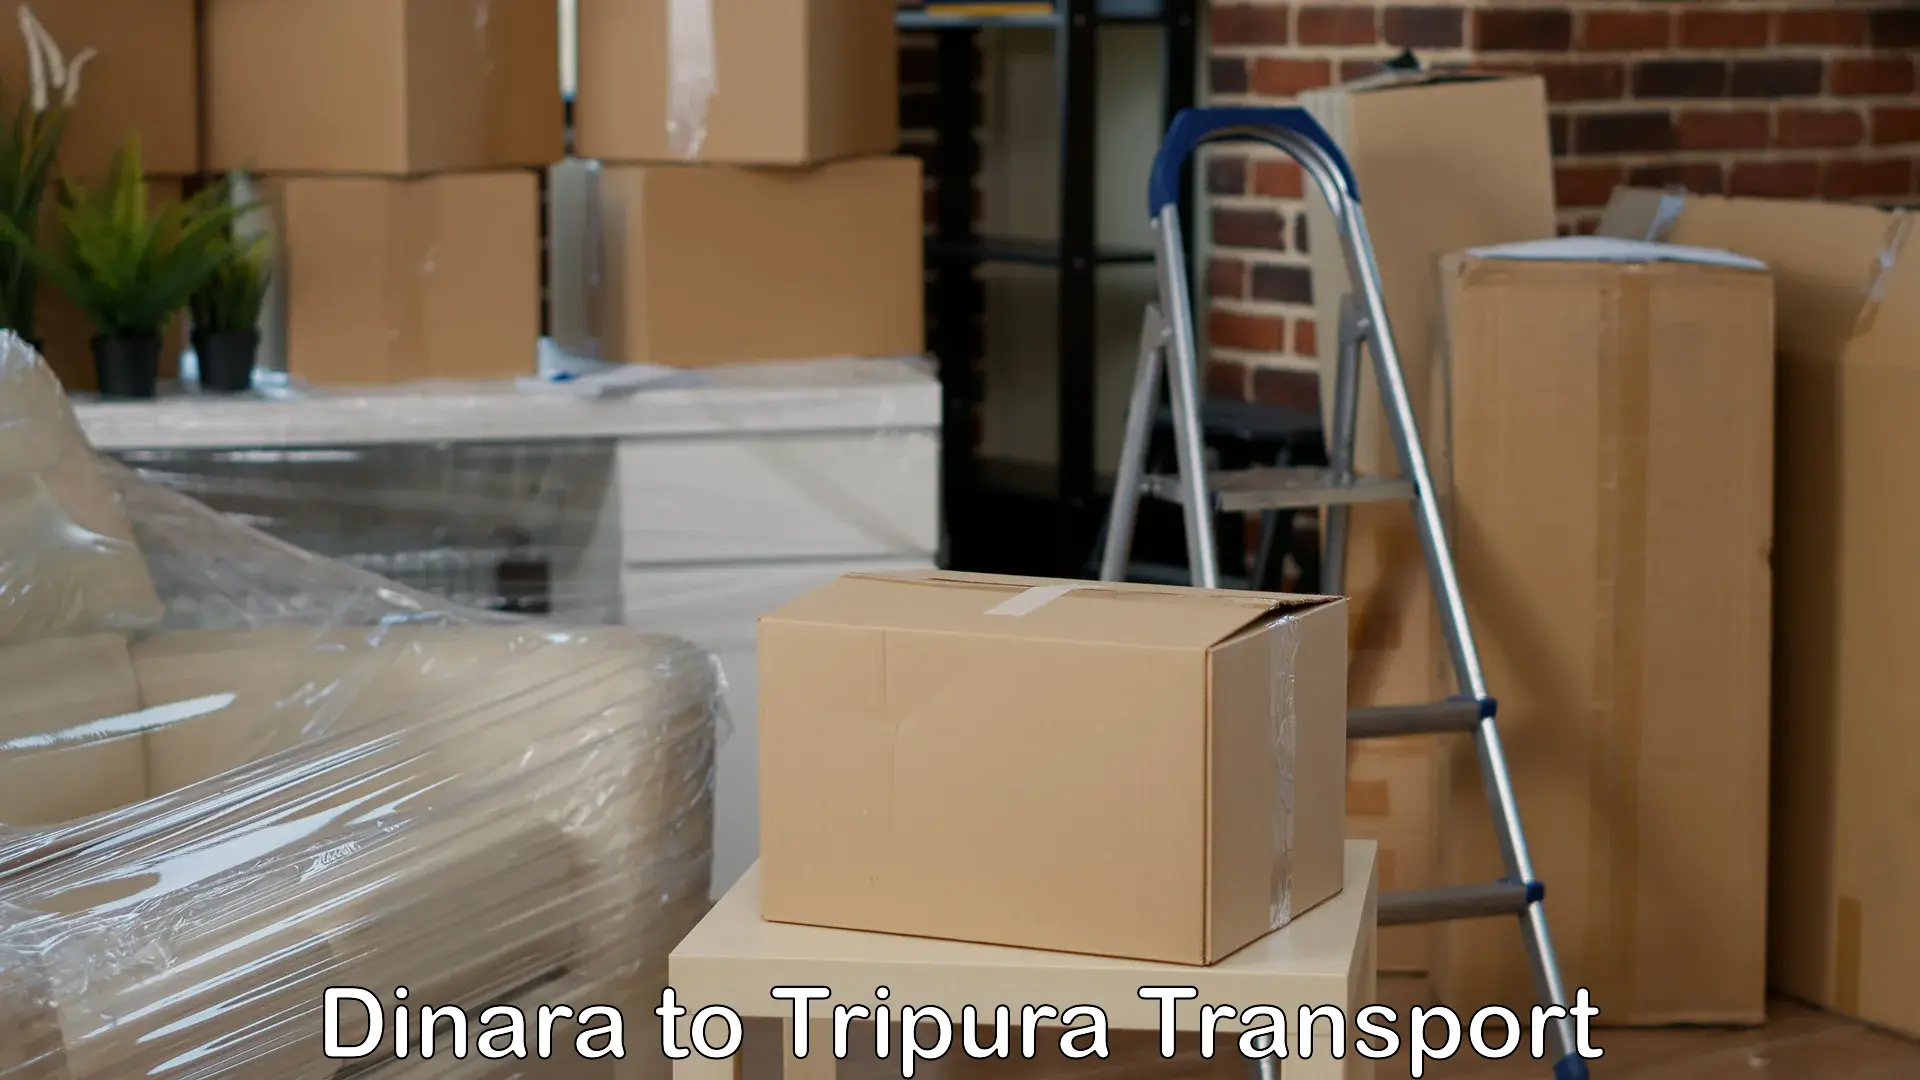 Cargo transportation services Dinara to Udaipur Tripura